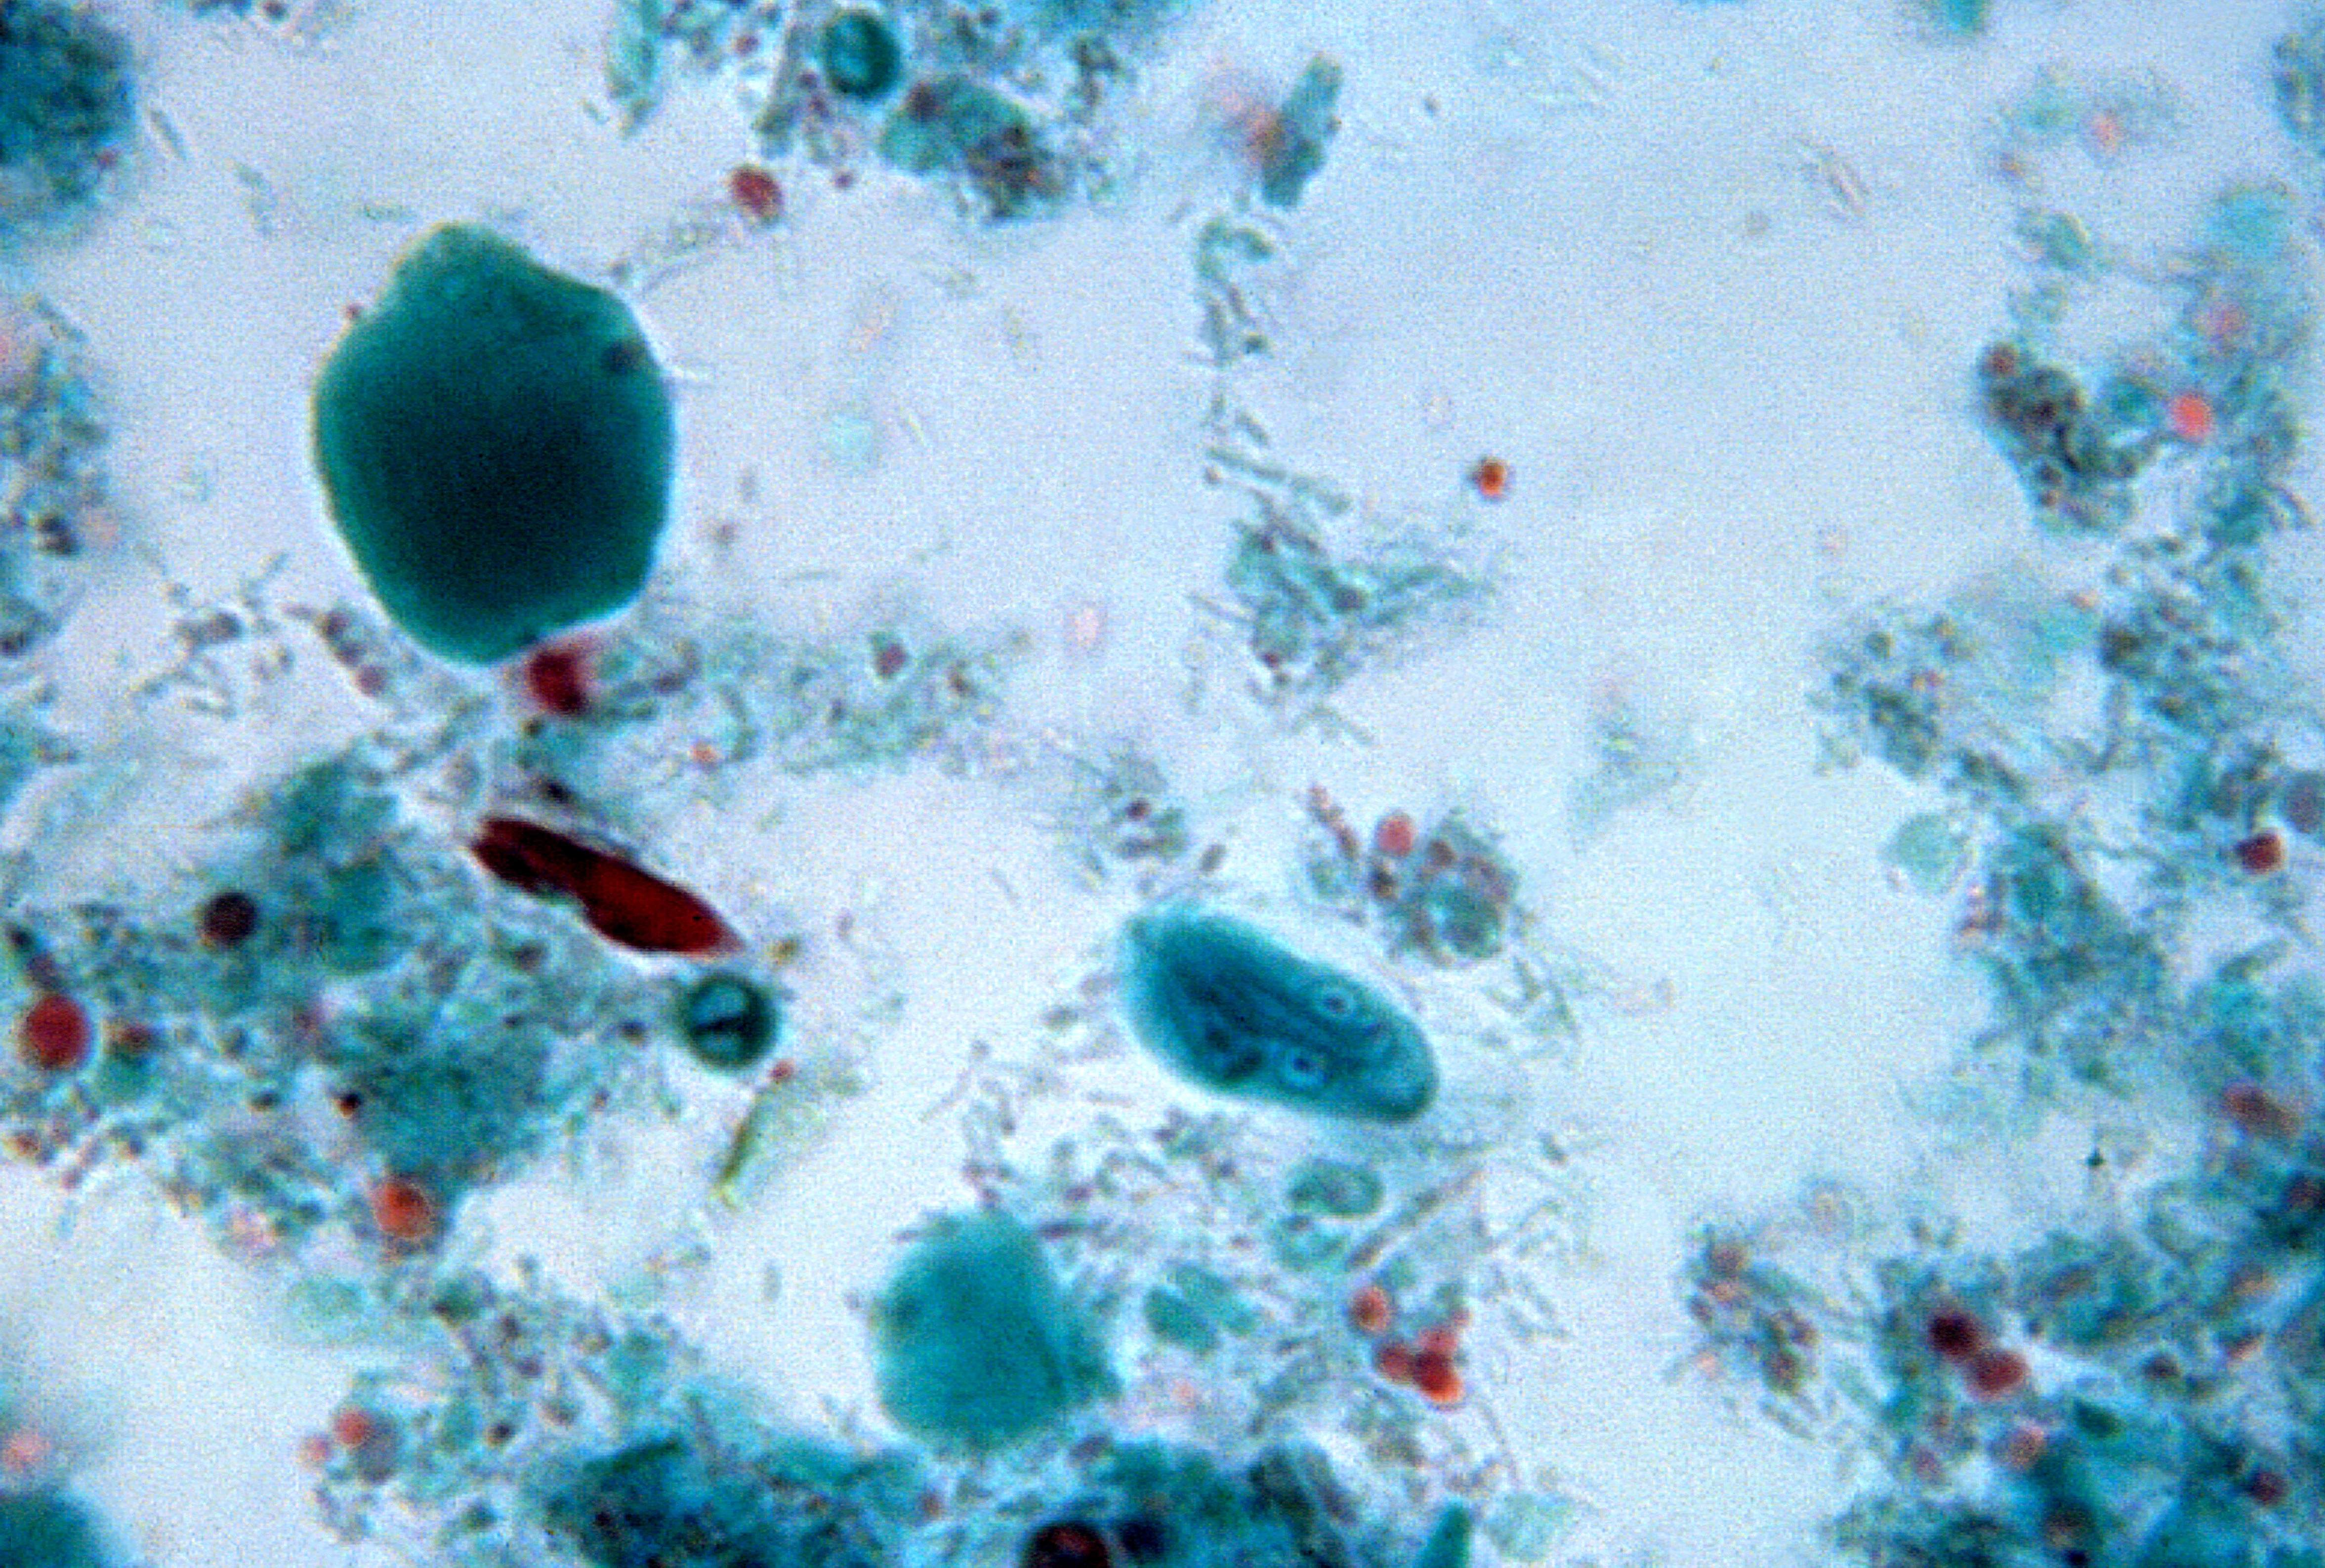 imagini de protozoare de giardia